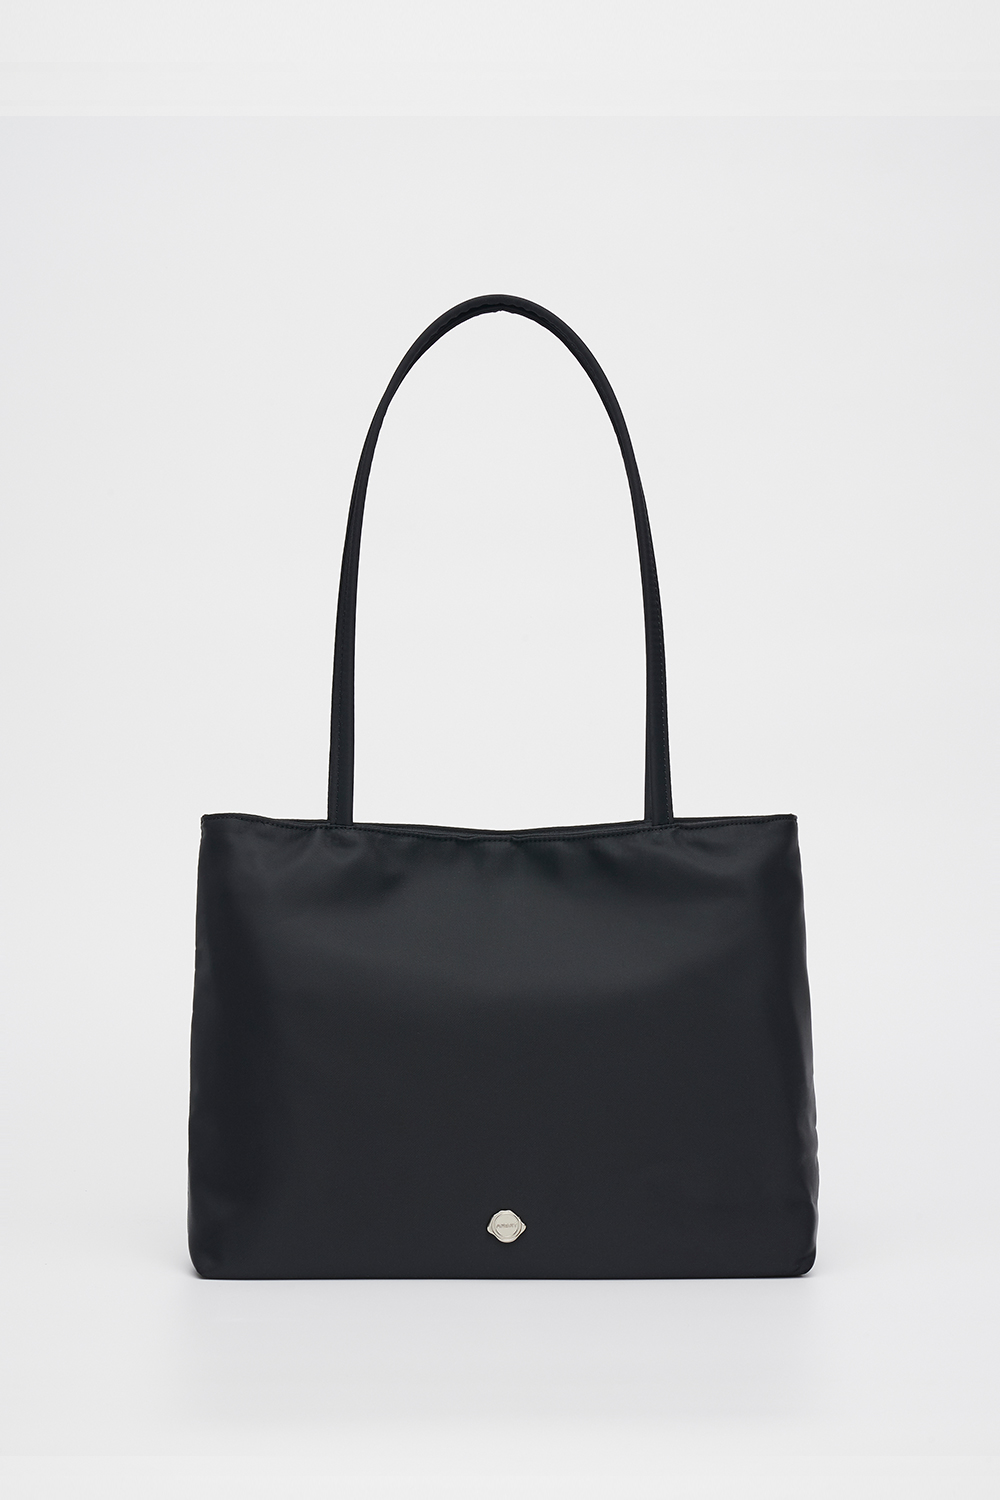 [3/13 예약배송]Urban Shopper Bag_BLACK